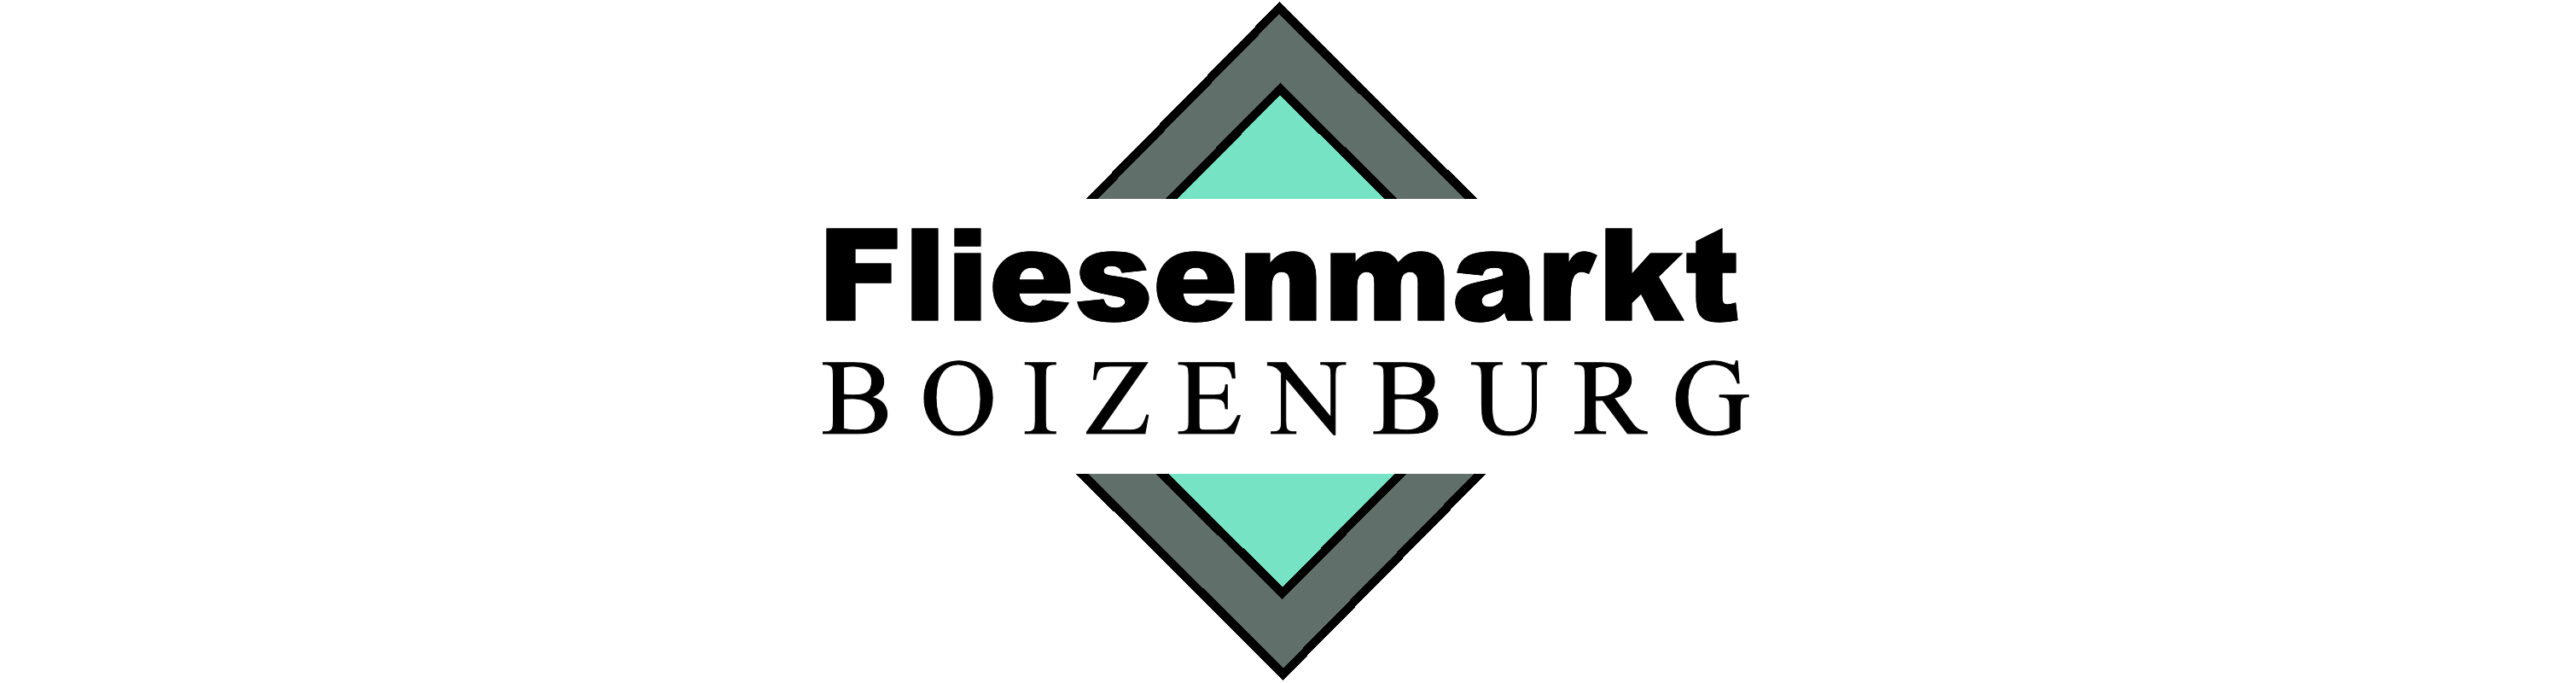 Fliesenmarkt Boizenburg Logo